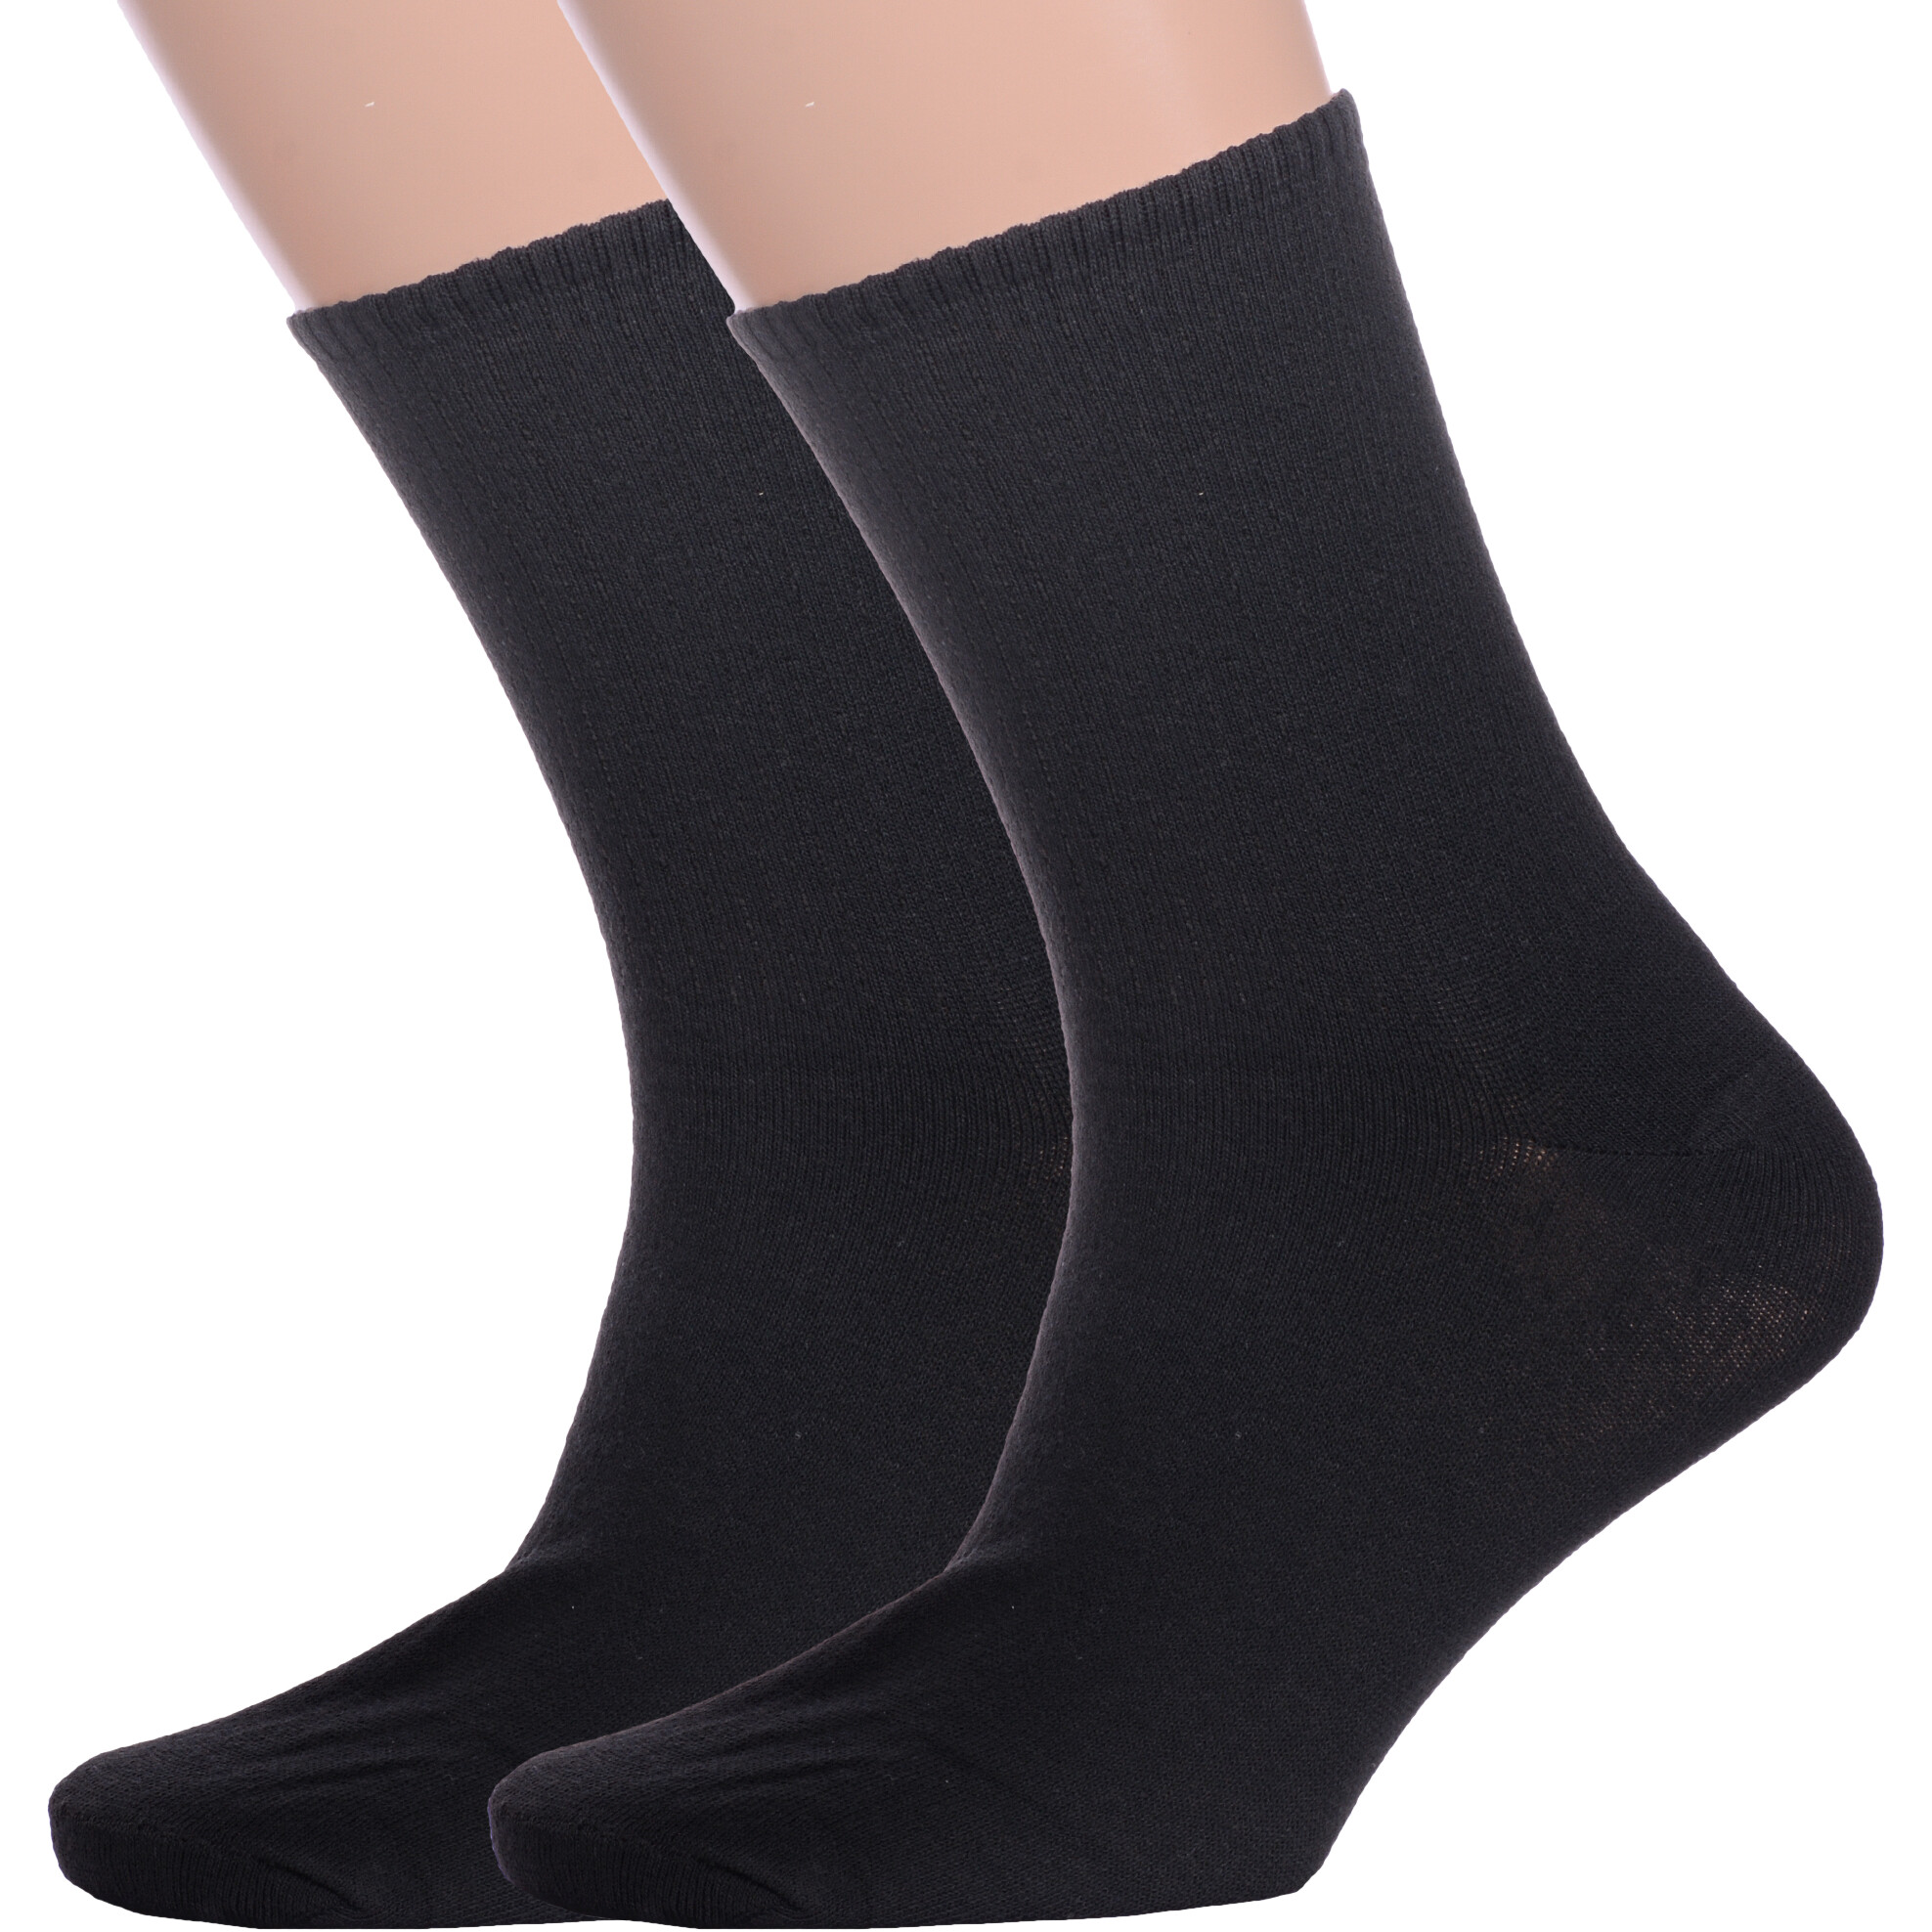 Комплект носков мужских Альтаир 2-М85 черных 27 2 пары